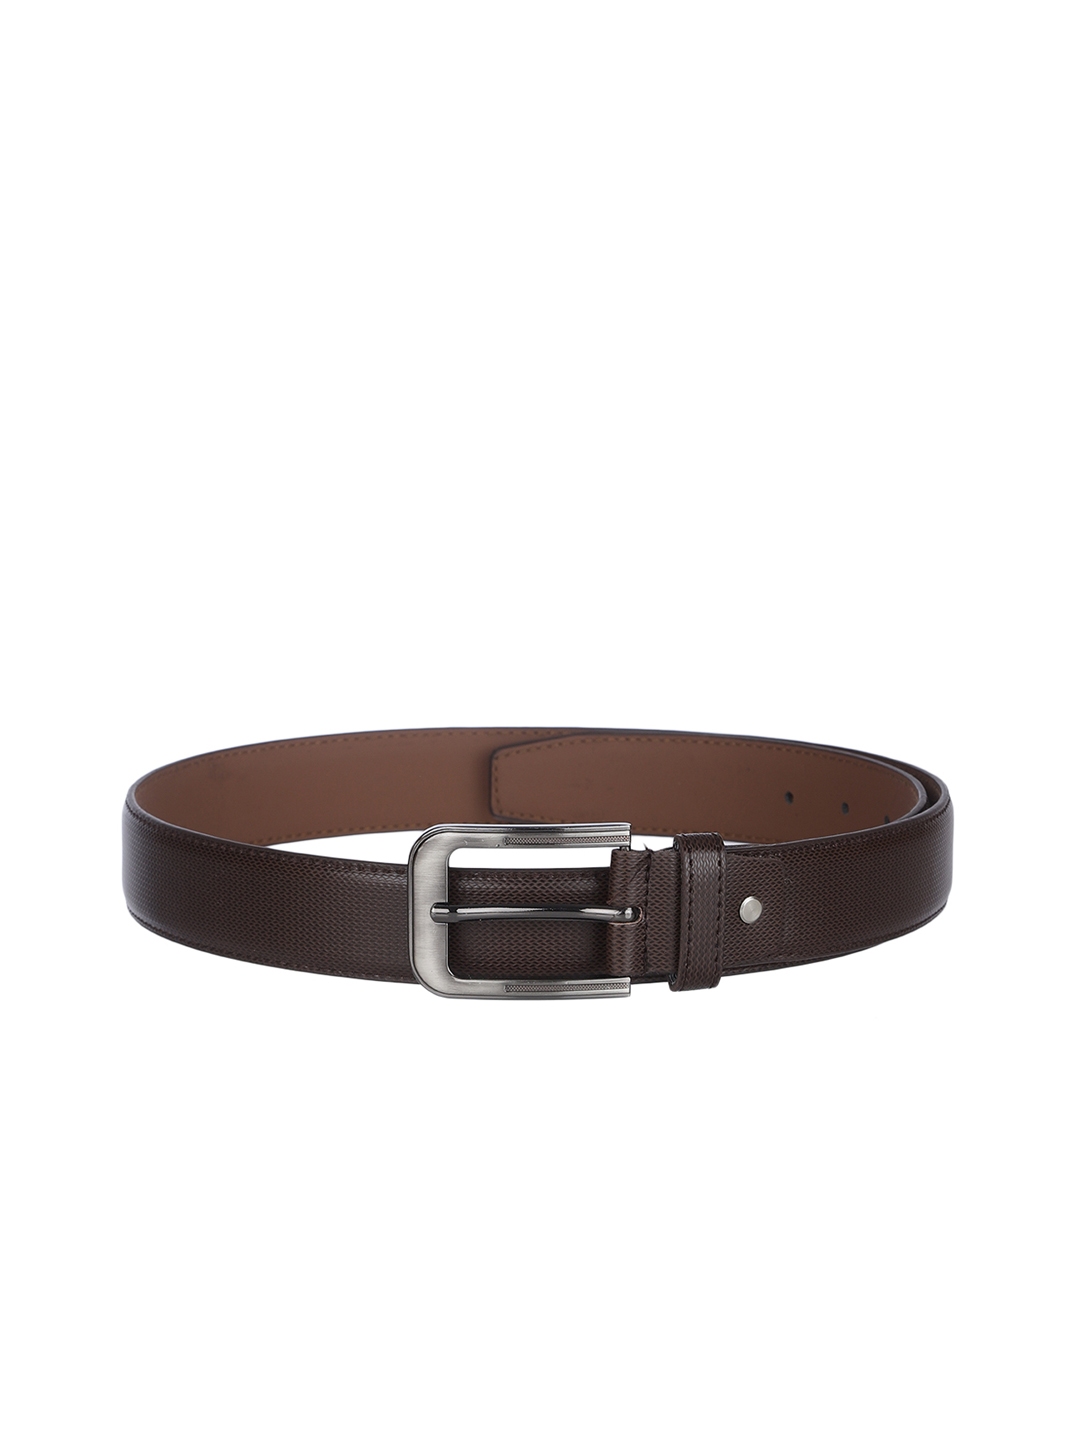 Buy Kara Men Brown Textured Belt - Belts for Men 10928234 | Myntra